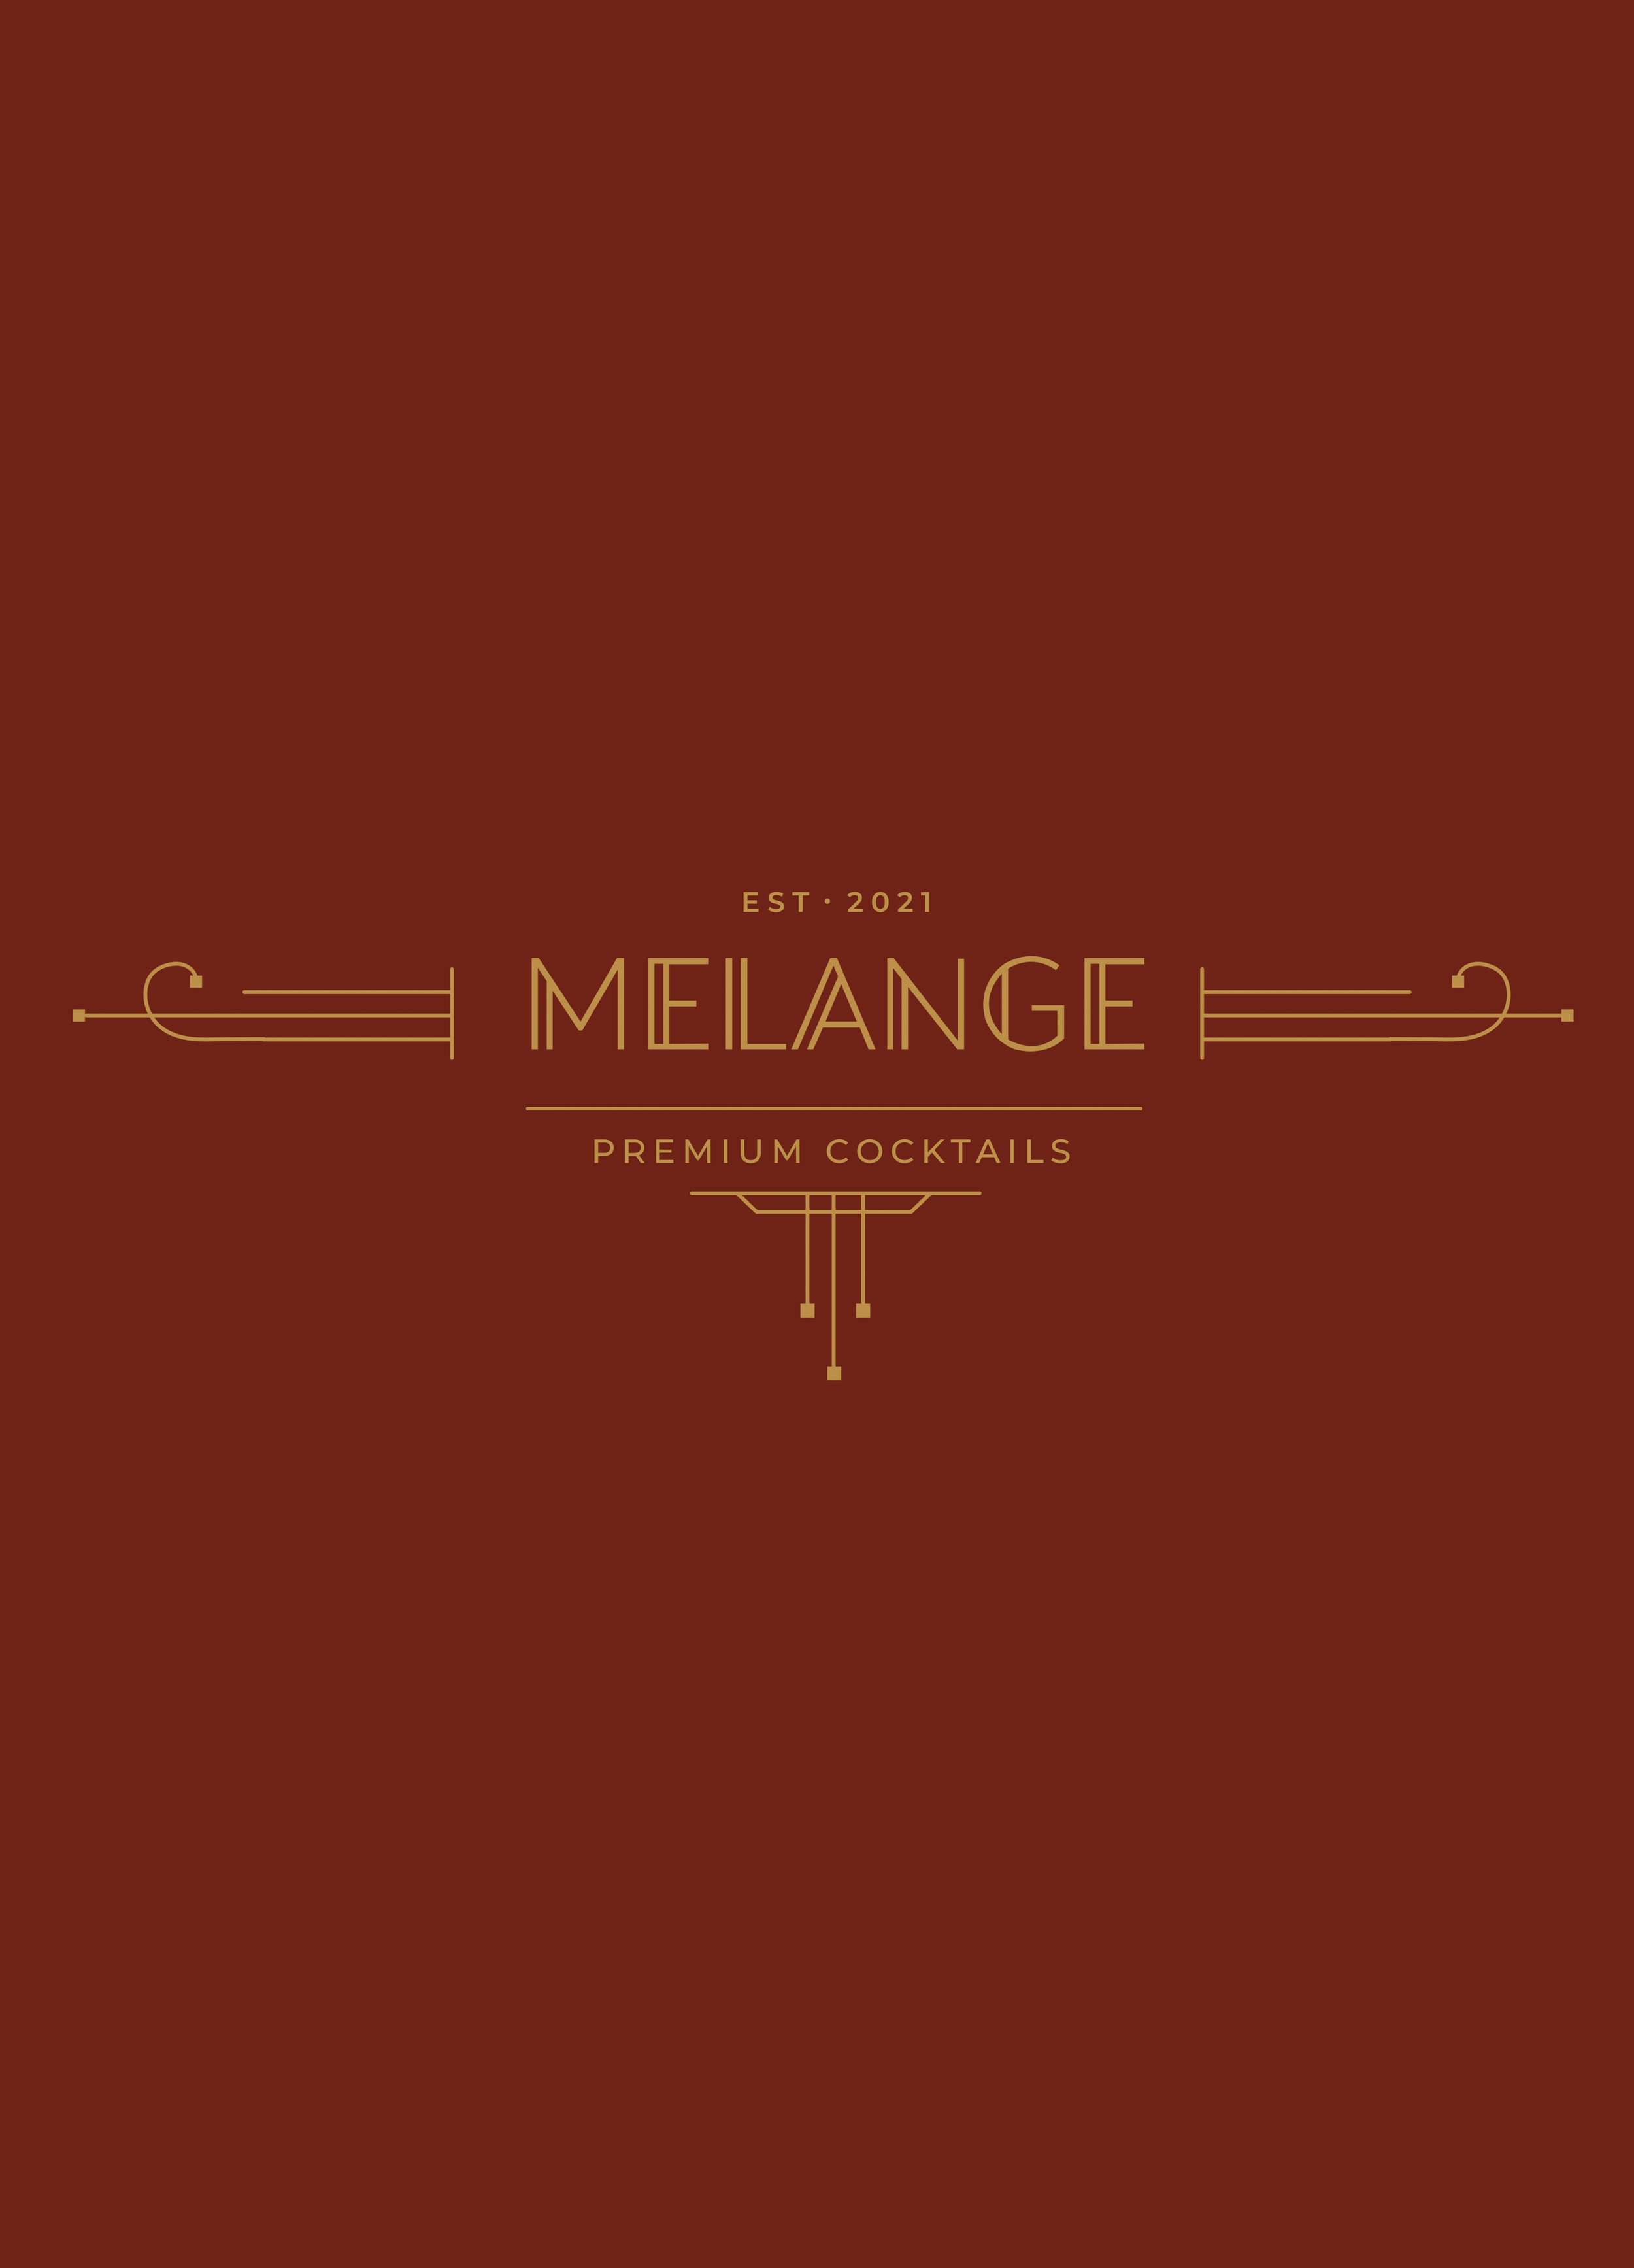 Melange Landscape Blood Orange.png